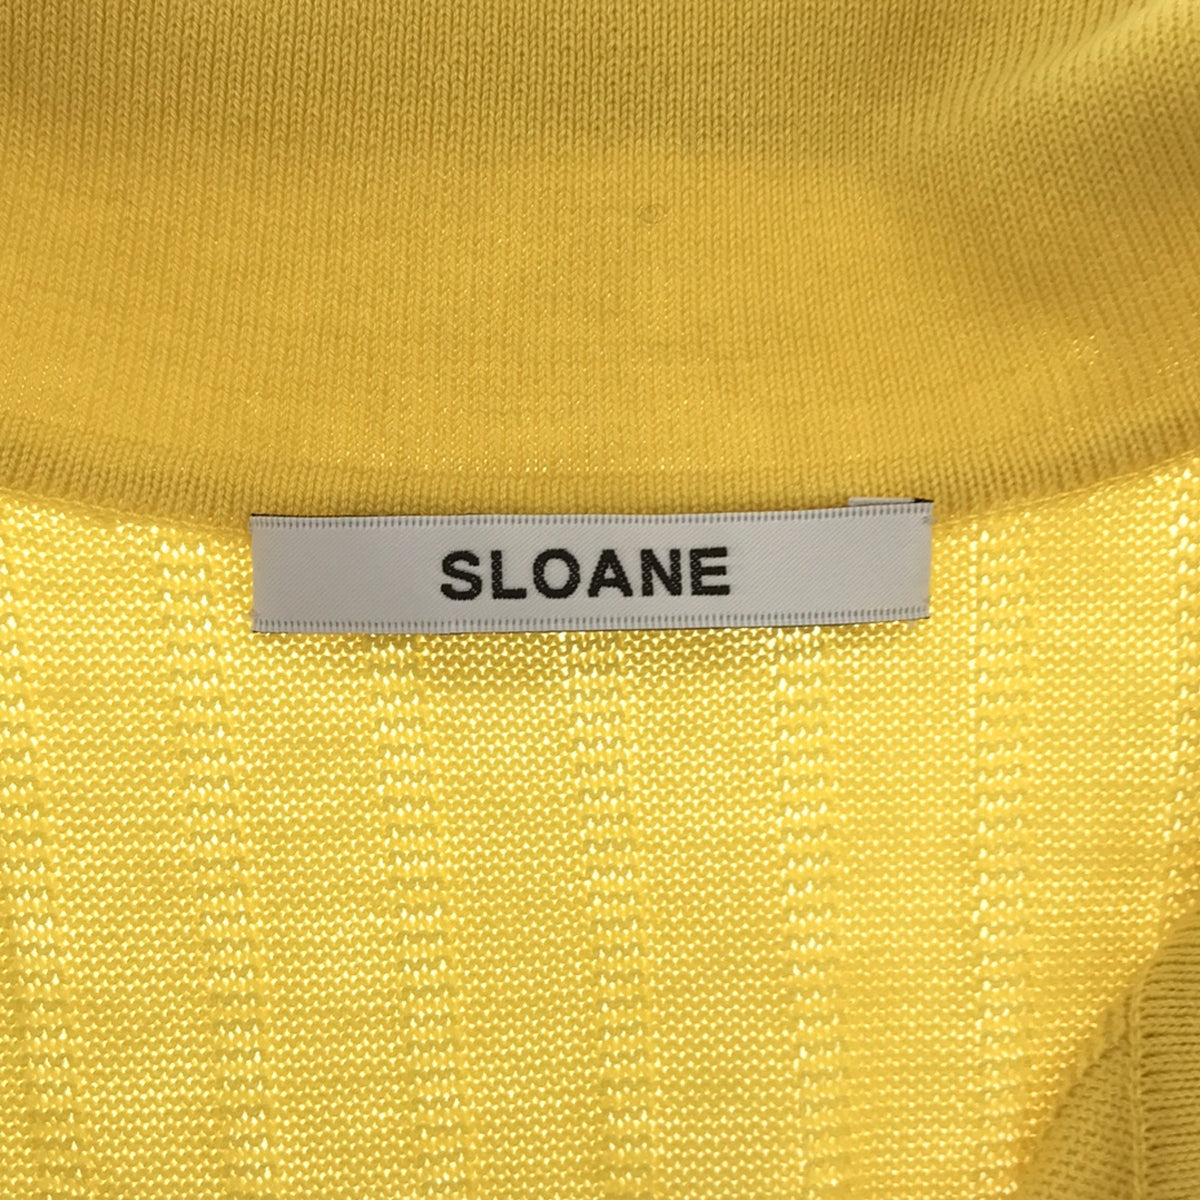 SLOANE / スローン | コットン シルクノースリーブ ニットポロ | 1 | レディース